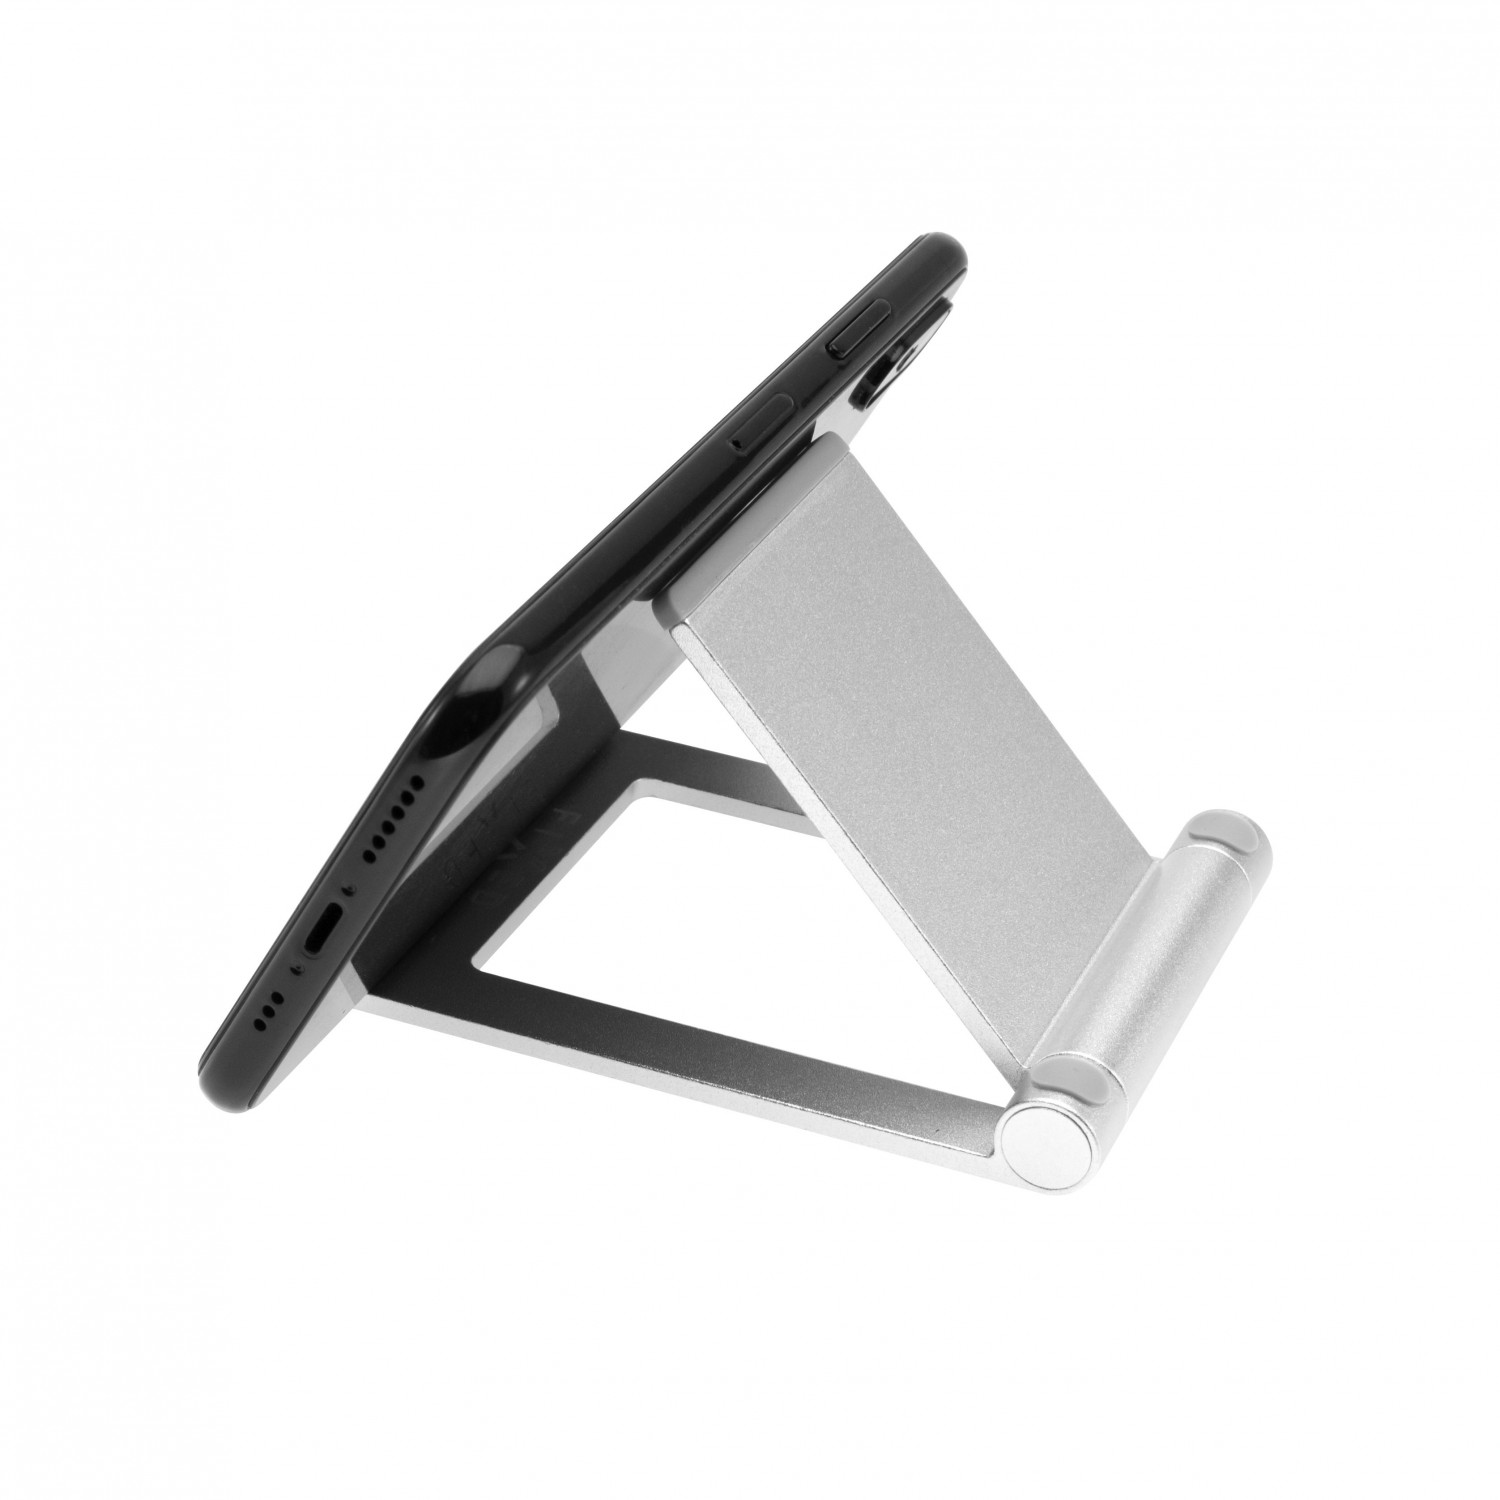 Hliníkový stojánek FIXED Frame TAB na stůl pro telefony a tablety, silver